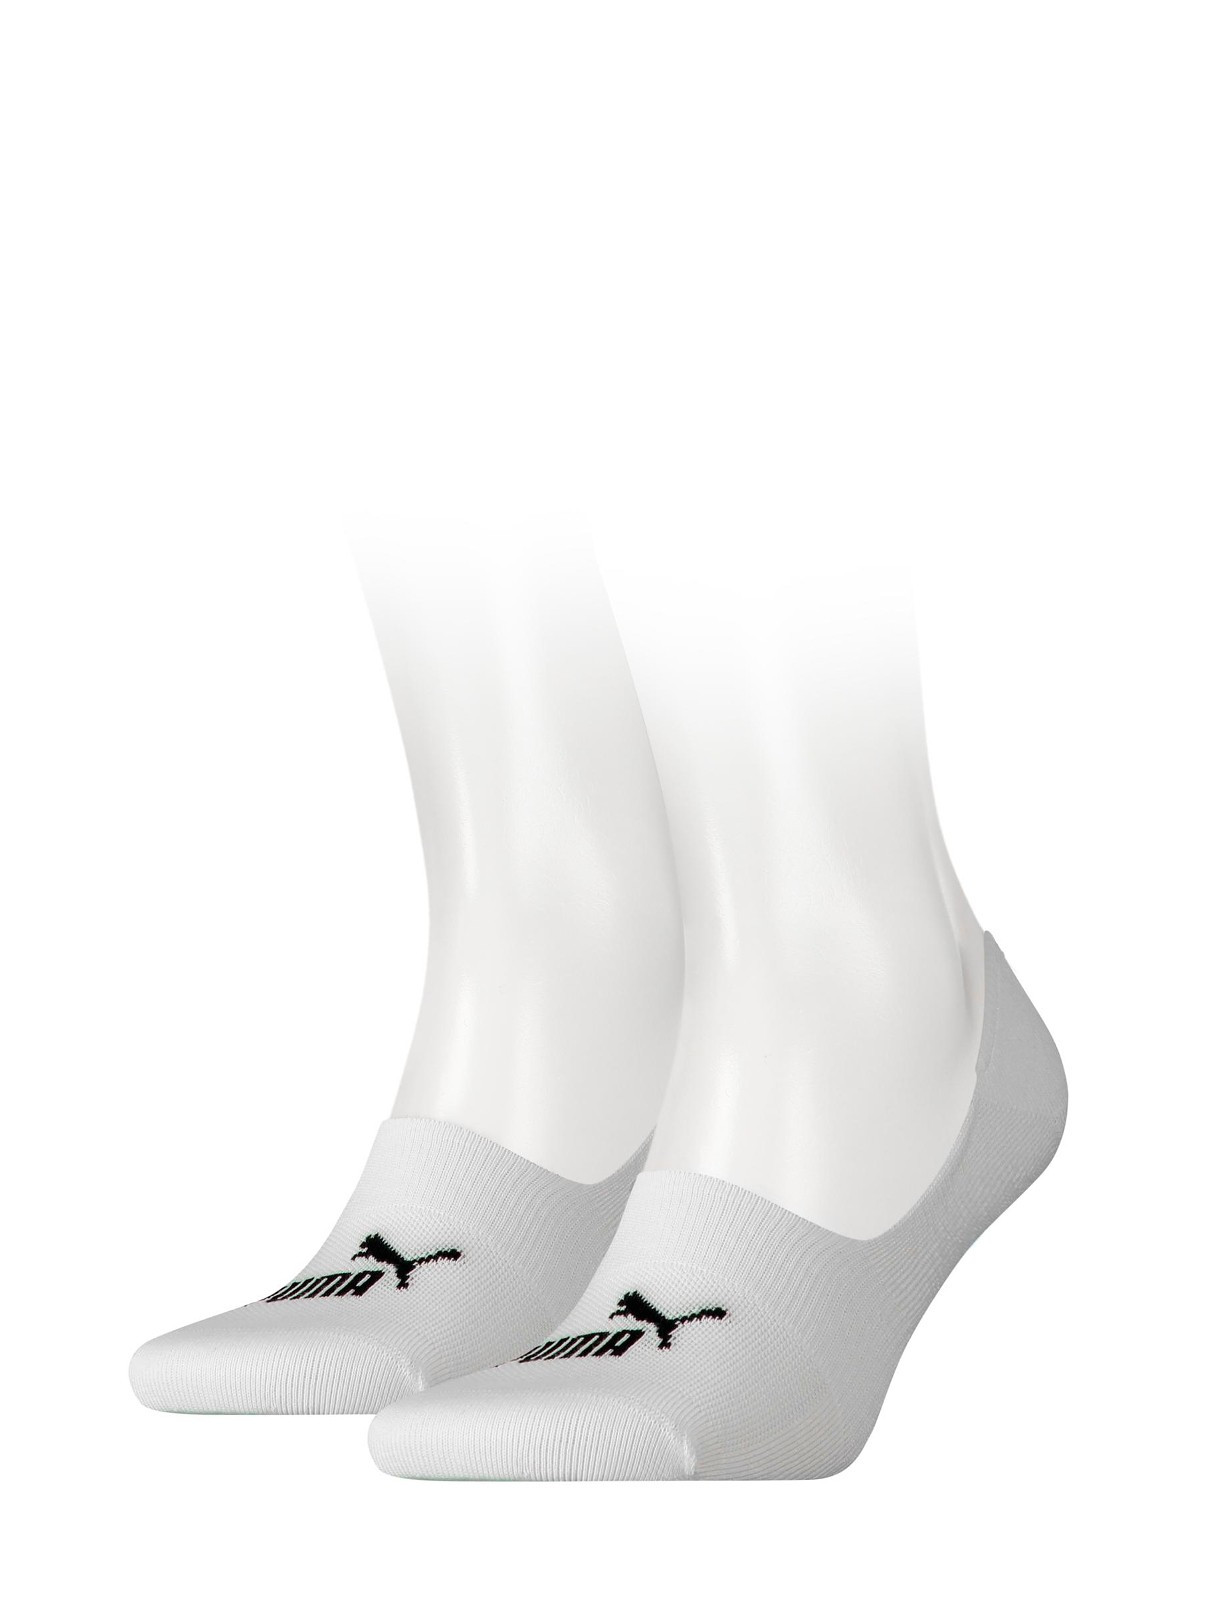 Unisex ponožky baleríny 907982 Soft Footie A2 bílé - Puma 43-46